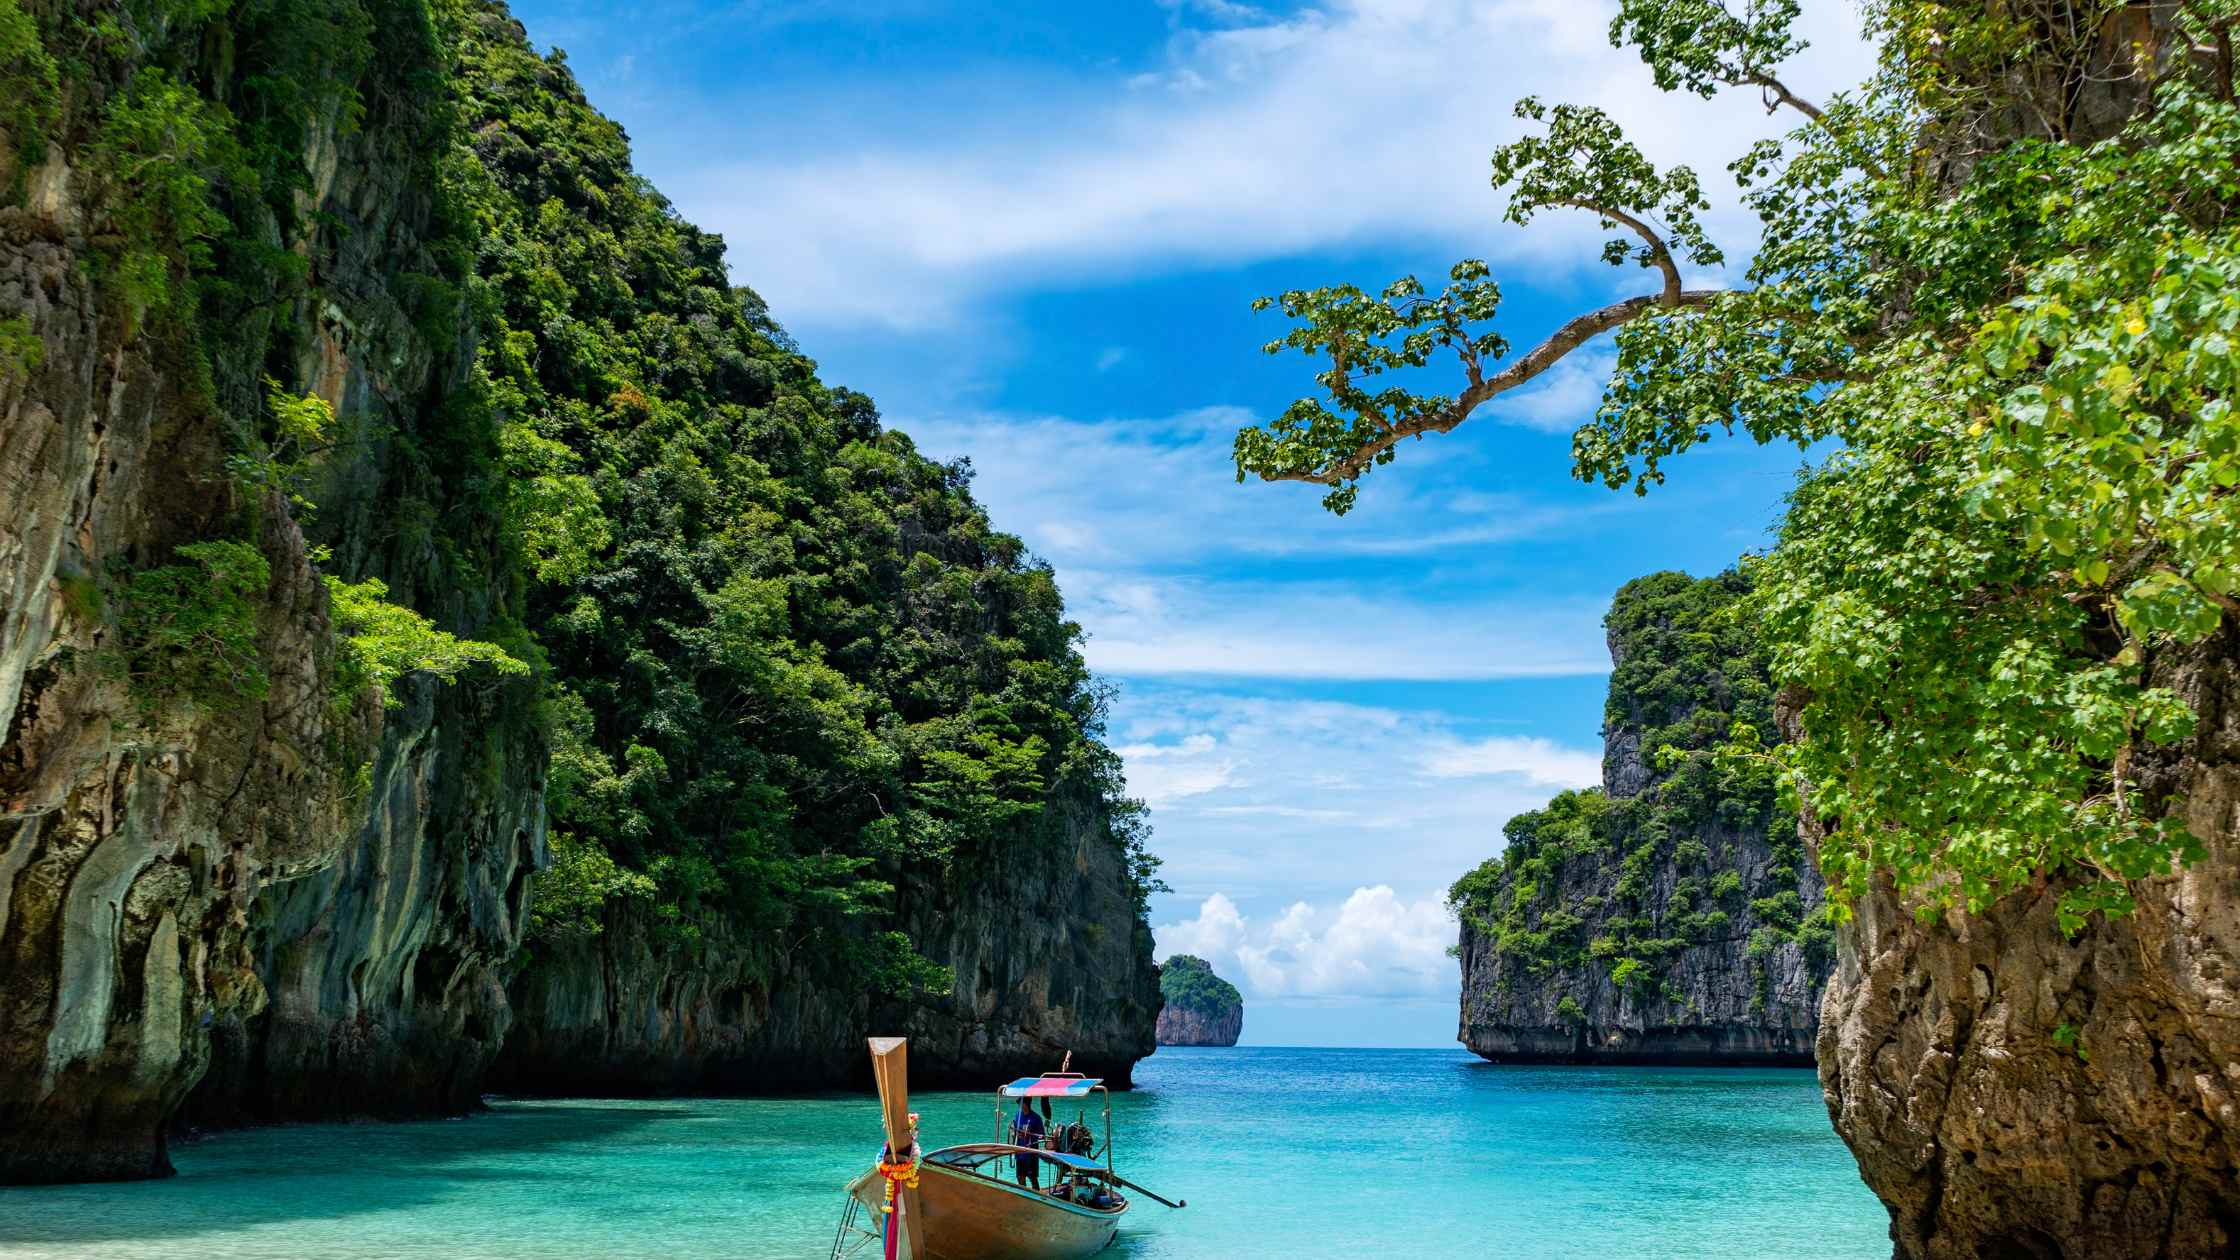 Quelle excursion choisir en Thaïlande ?